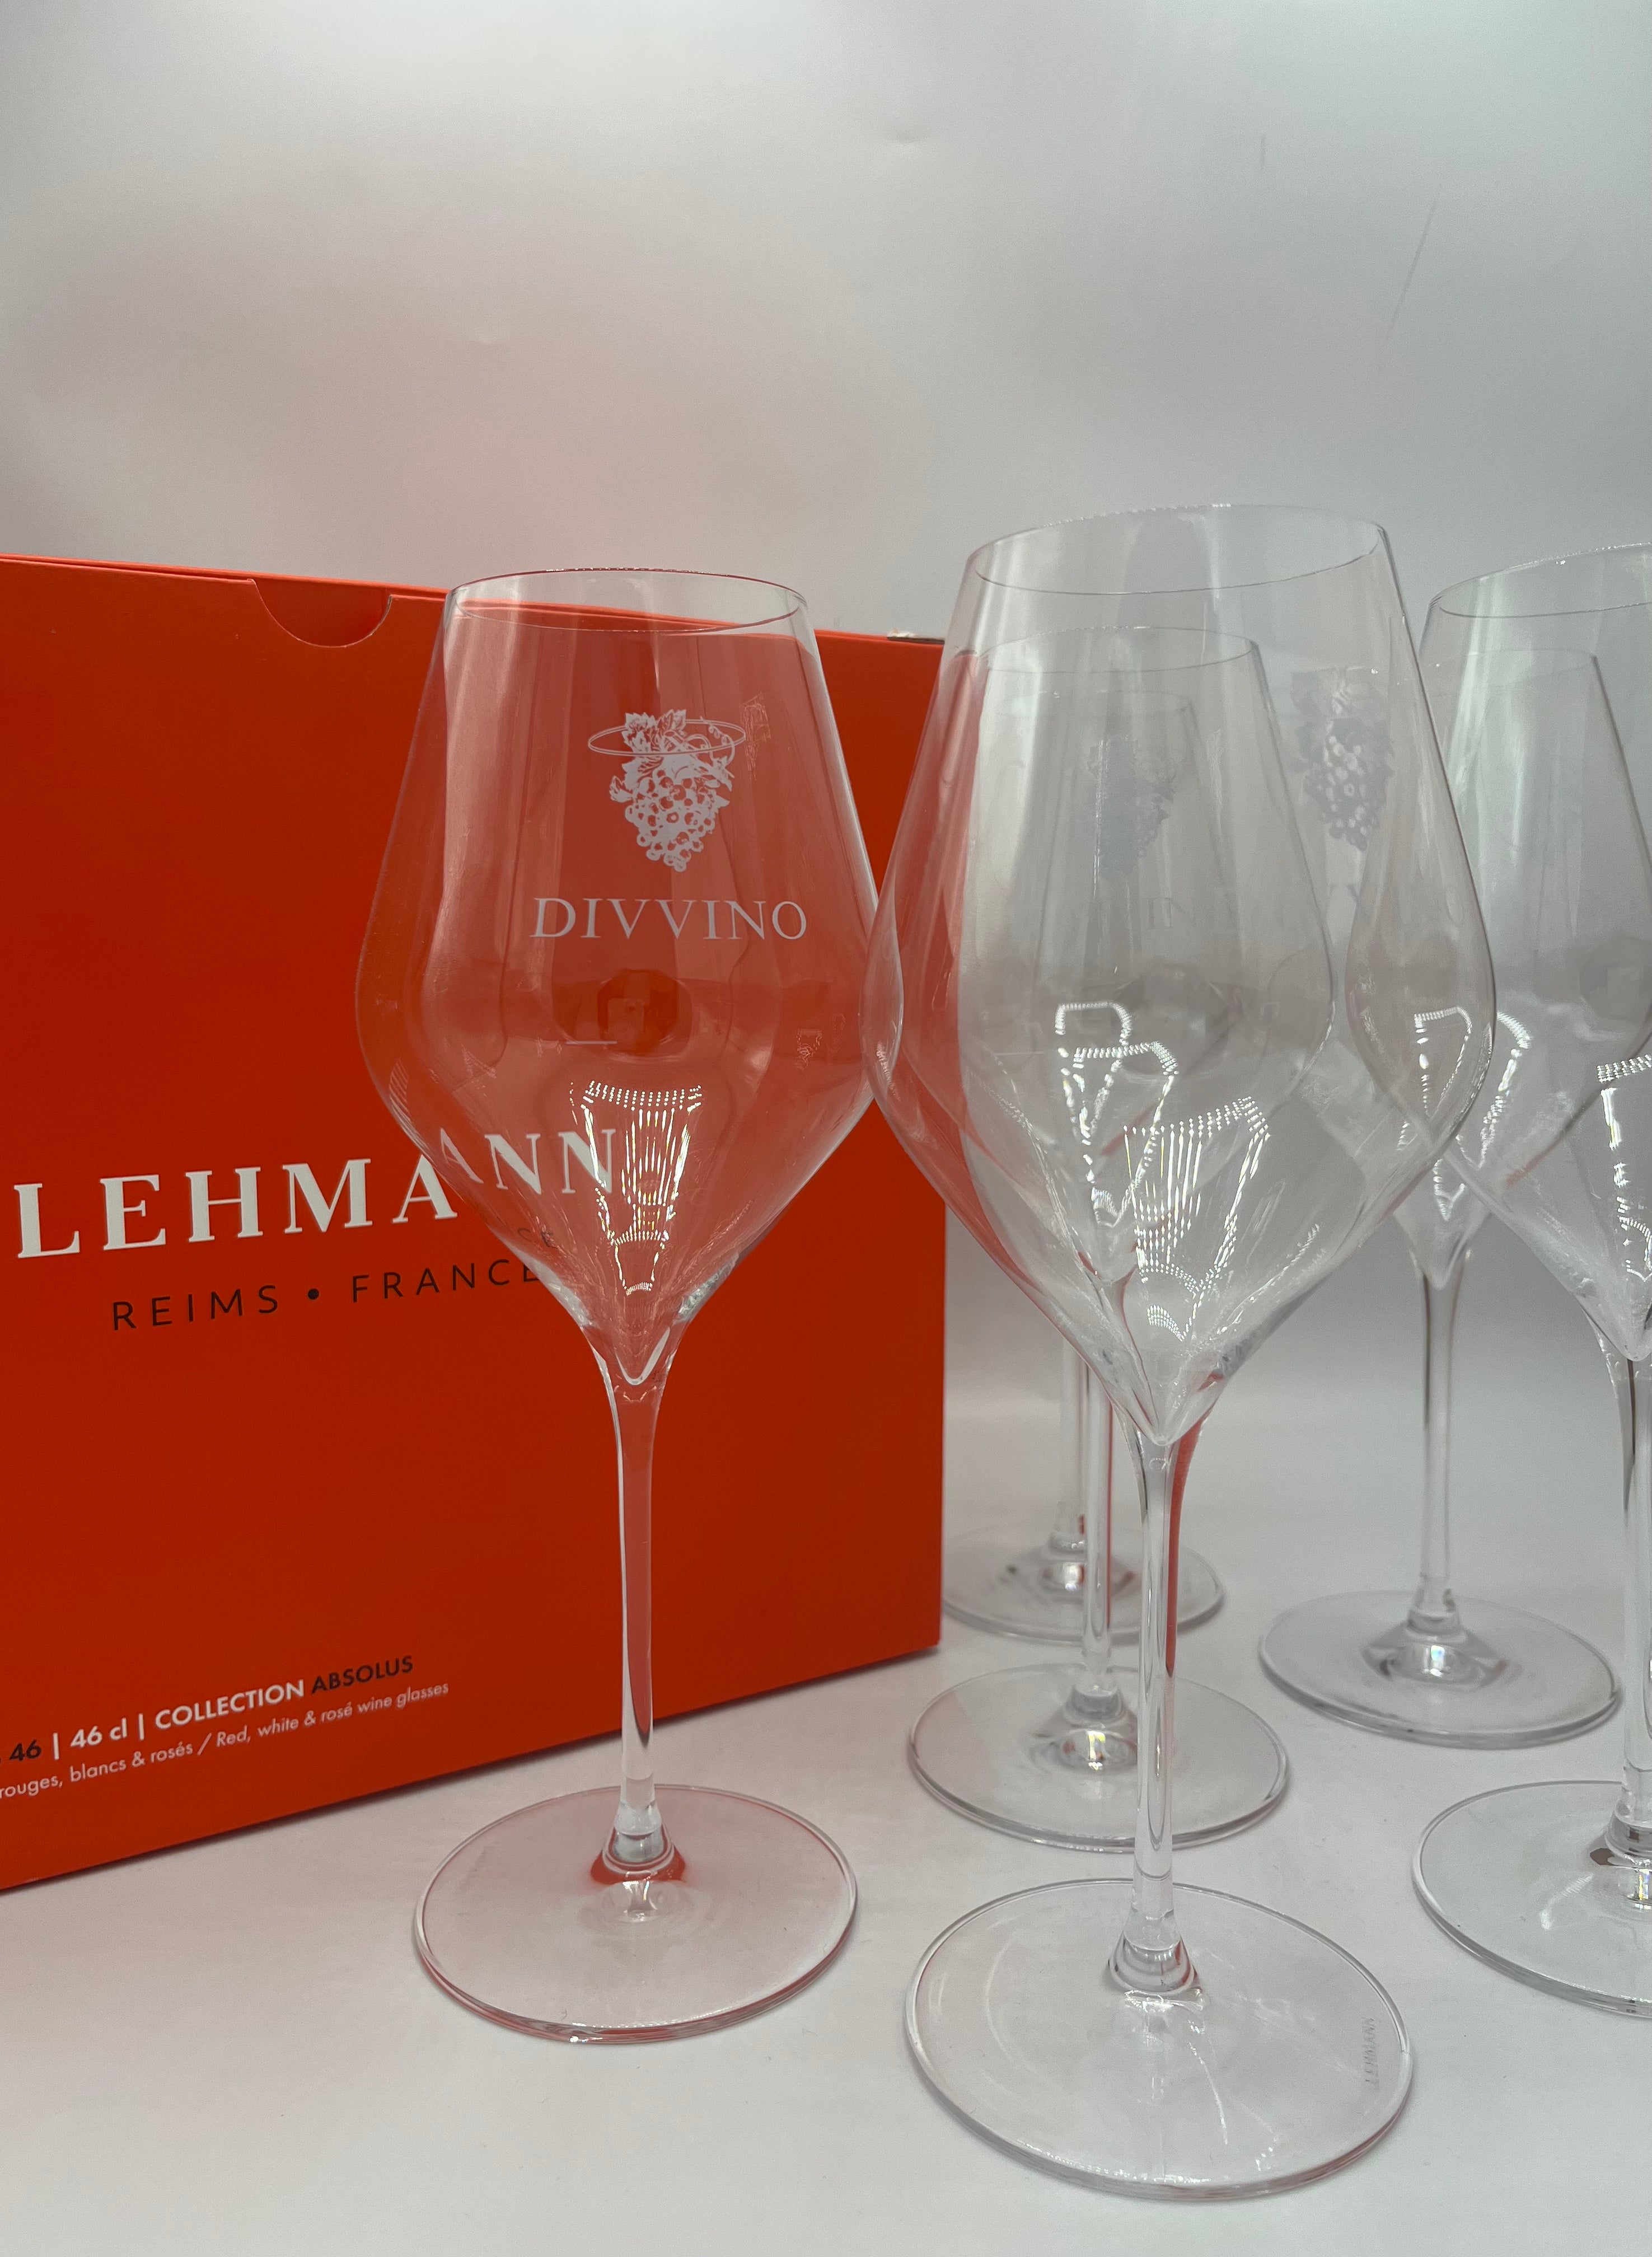 Lot de 6 verres à vin Divvino Paris - Lehmann